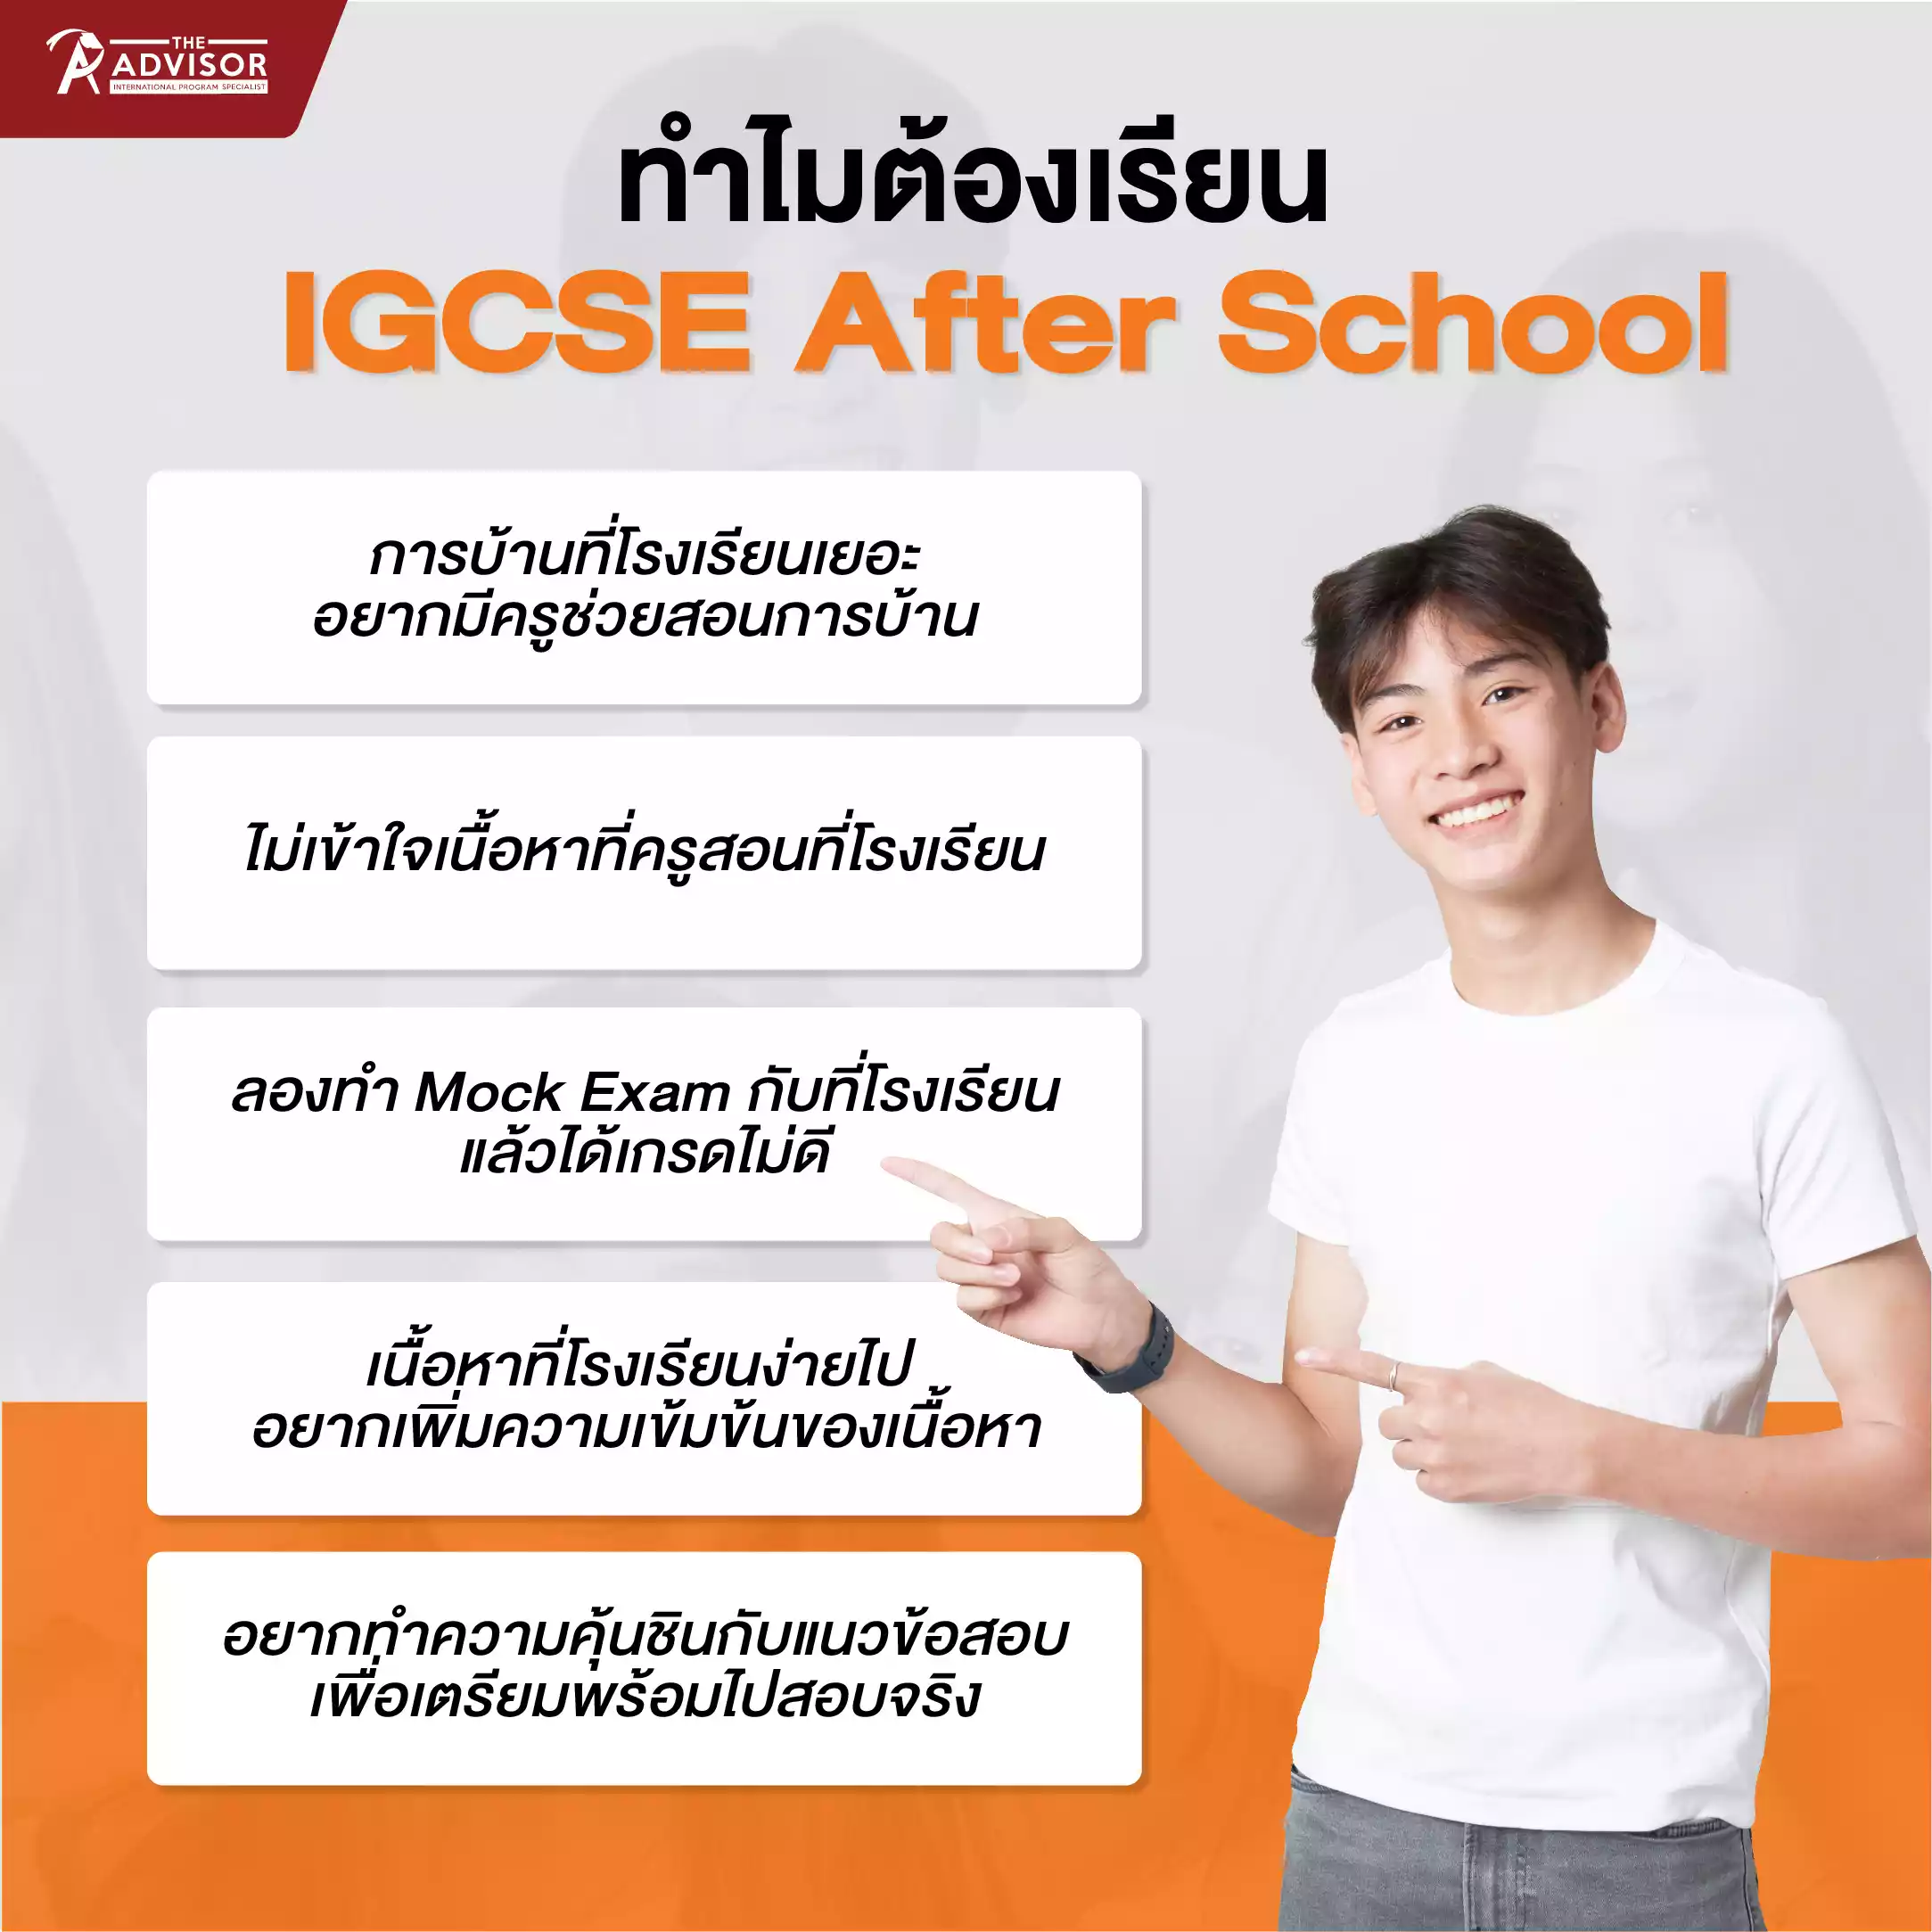 ทำไมต้องเรียน IGCSE After School